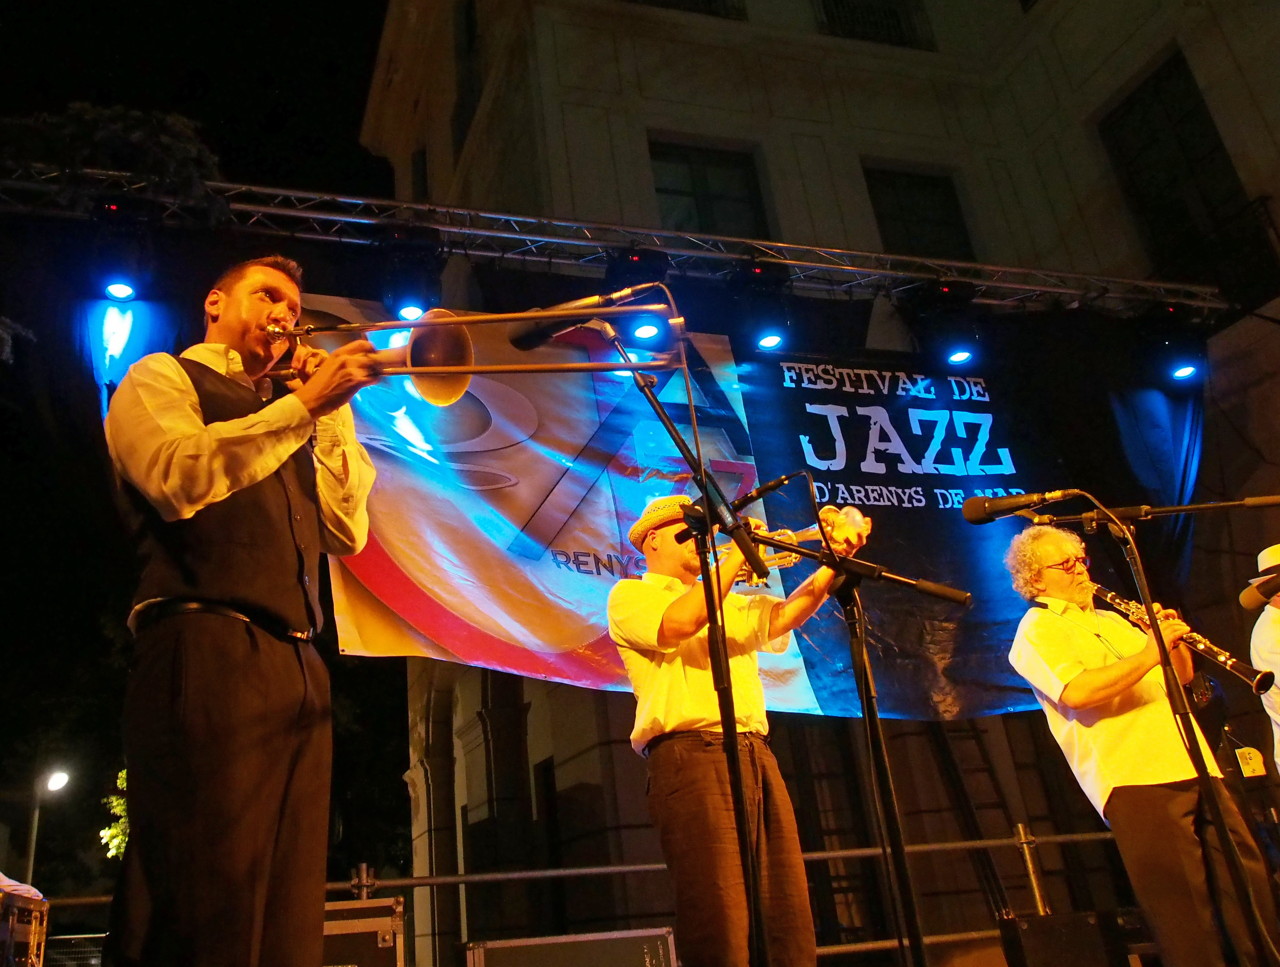 Imatges del 21 Festival de Jazz d'Arenys de Mar - 2012 - Foto 94974324